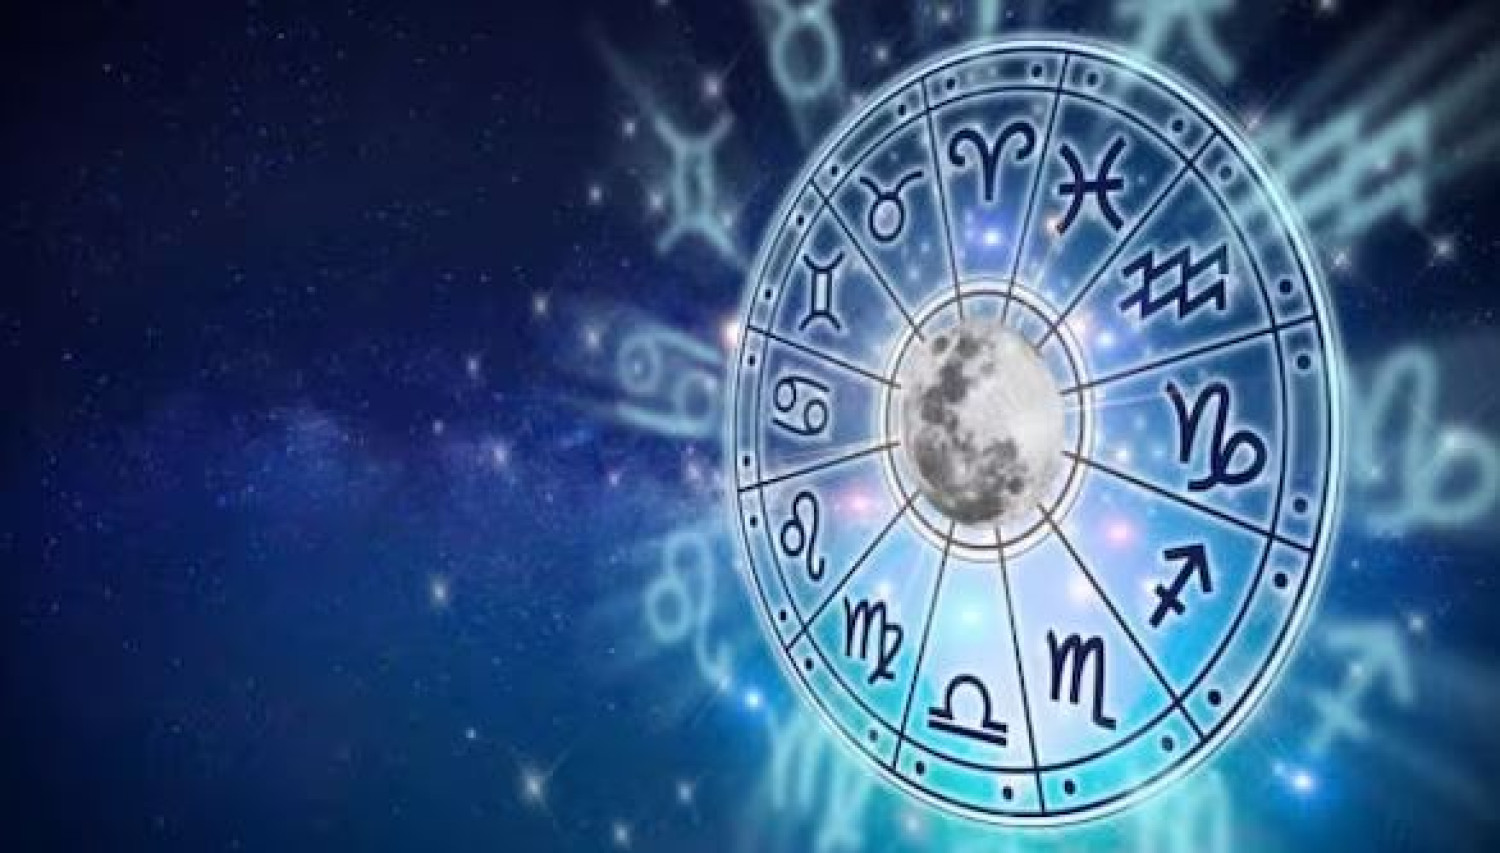 Áprilisi horoszkóp - a változás és átalakulás jegyében